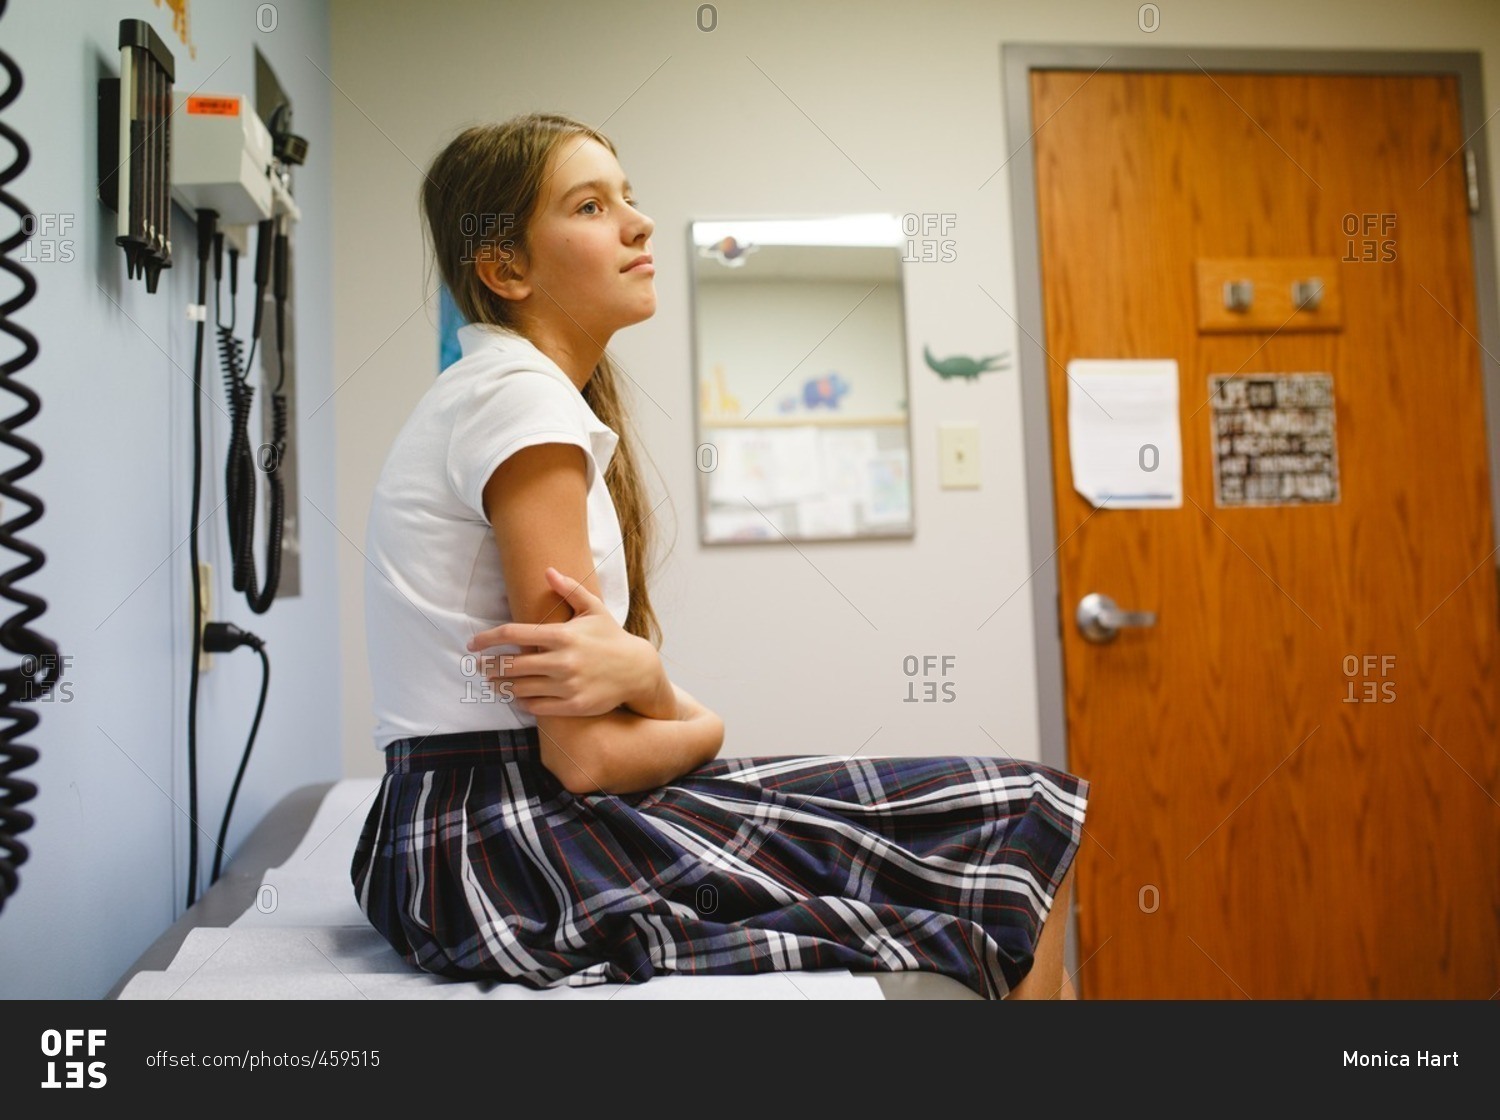 Tween girl at doctor's office wearing uniform